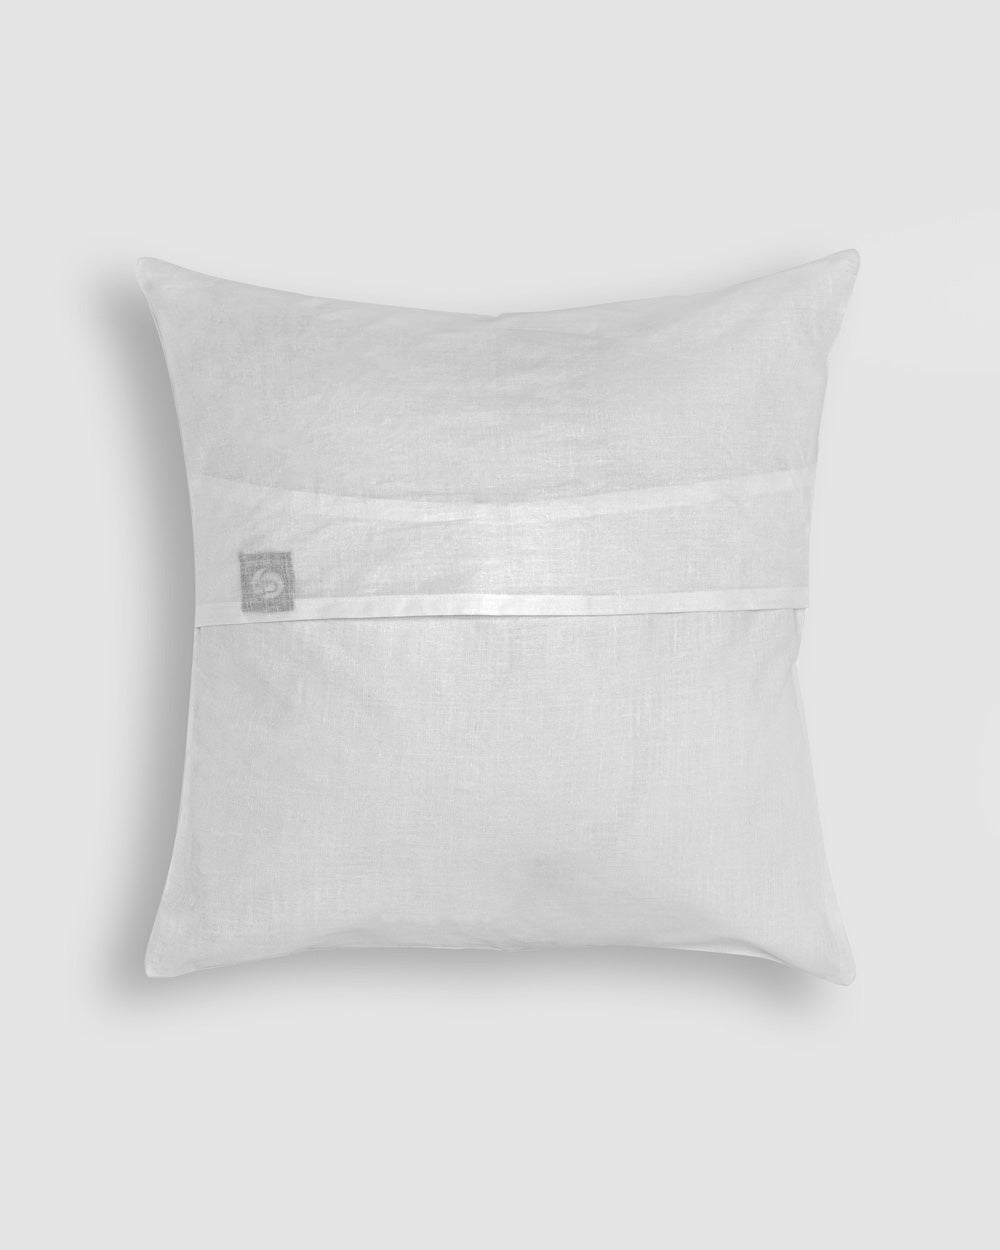 Cushion Cover Applique Gulchand Design, White